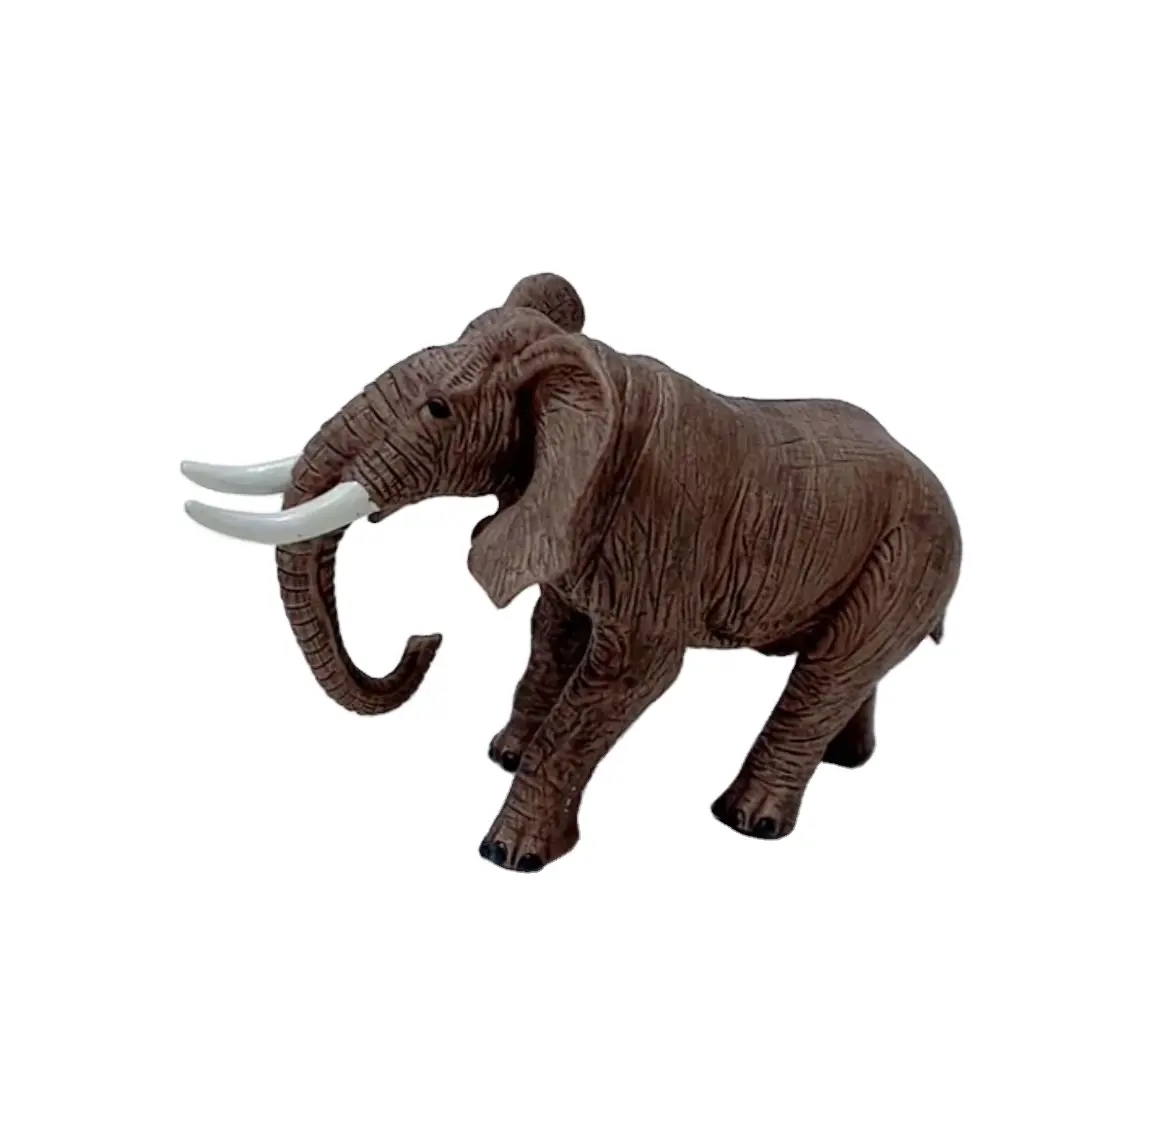 PVC Zoo Mainan Liar Model Belajar Anak-anak Simulasi Realistis Pvc Safari Figurine Action Figure Mini Gajah Hewan